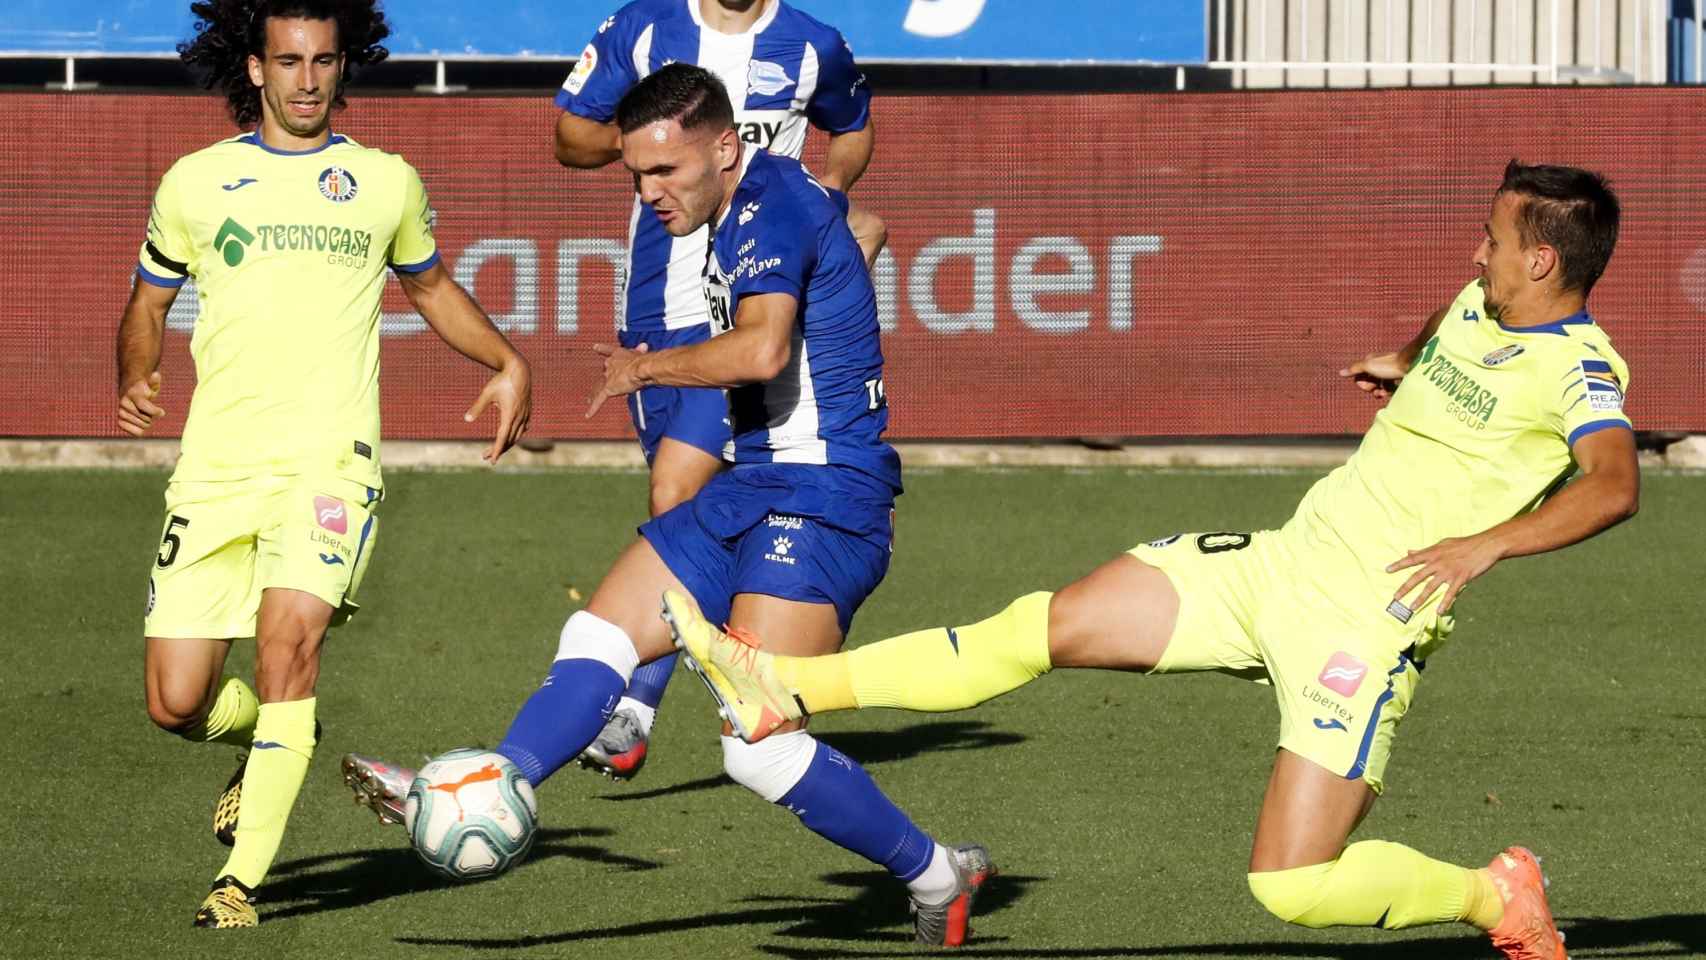 El delantero del Alavés Lucas Pérez disputa un balón frente a Maksimovic, del Getafe